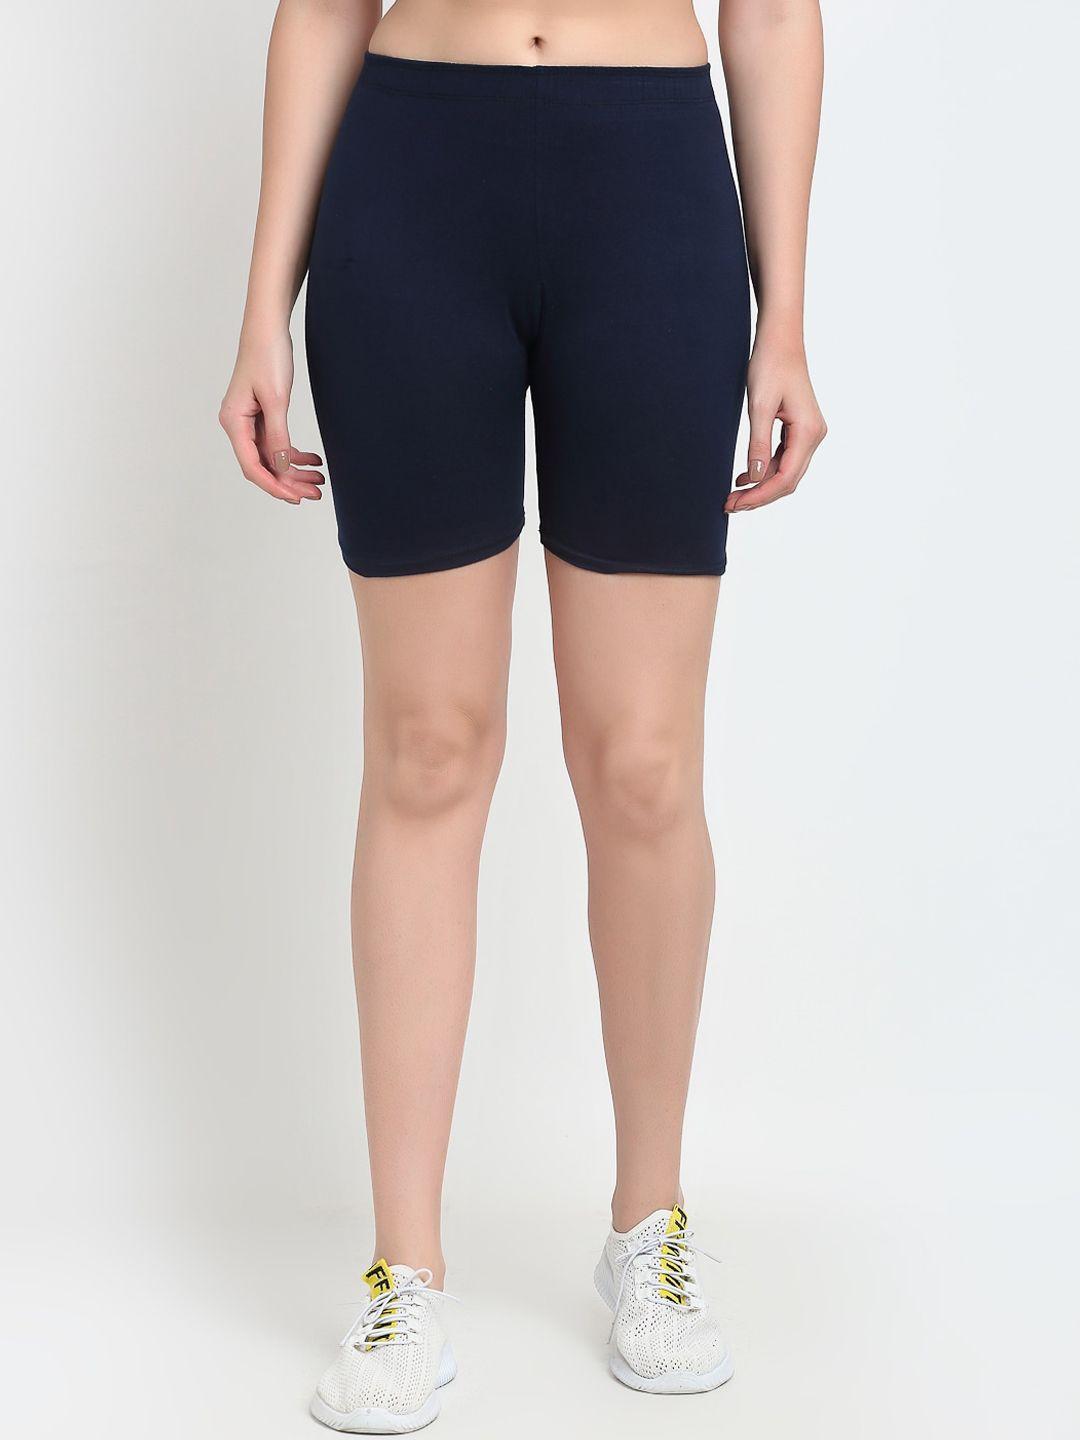 jinfo-women-navy-blue-cycling-sports-shorts